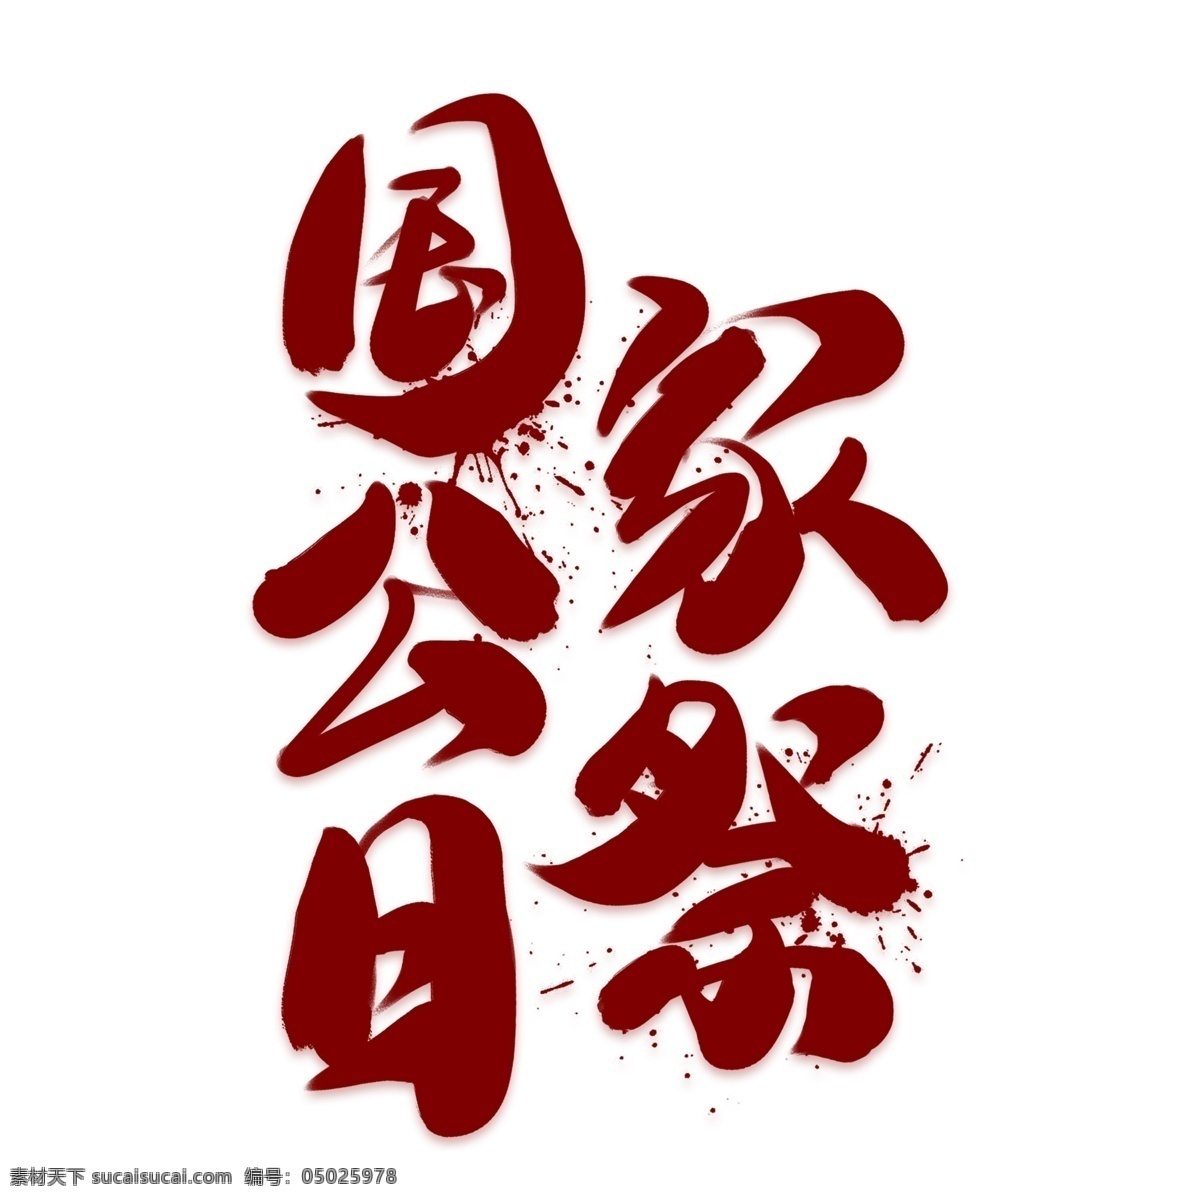 国家 公祭 日 红色 创意 艺术 字 国家公祭日 南京大屠杀 纪念日 公祭日 活动